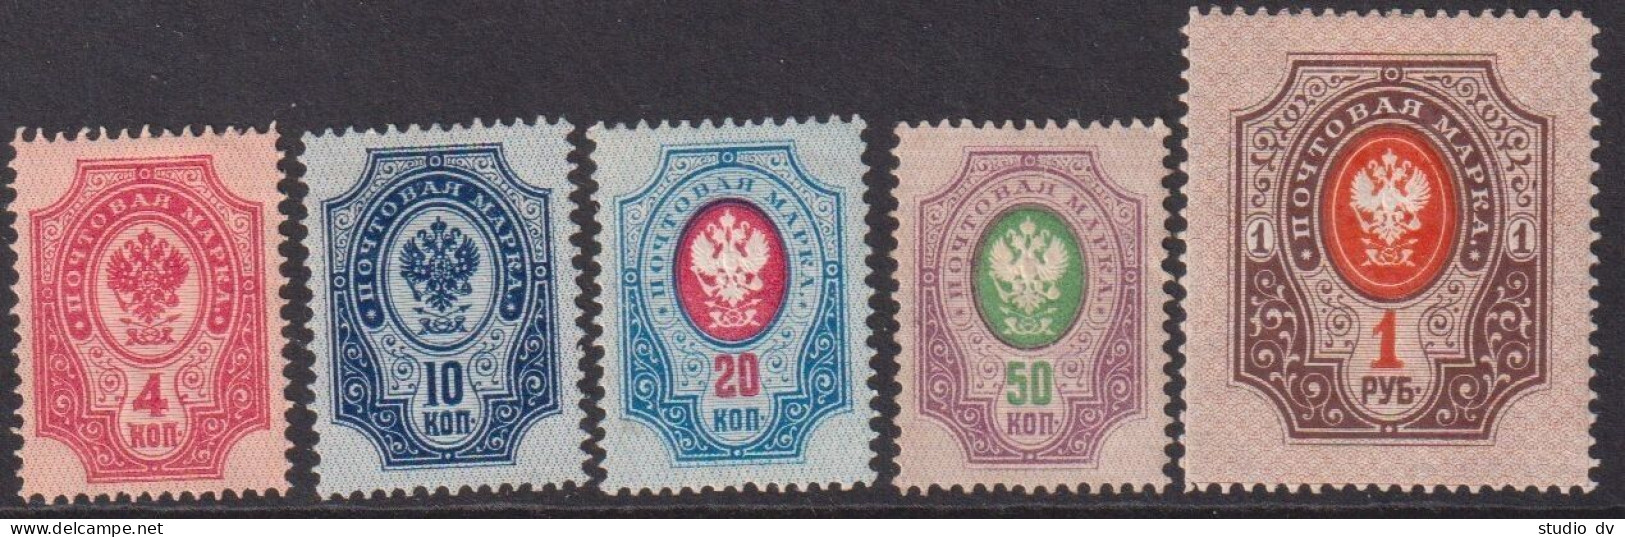 Russia 1889 10th Issue 4-50k, 1R Horizontal Watermark, Mi 40x-44x MLH - Neufs